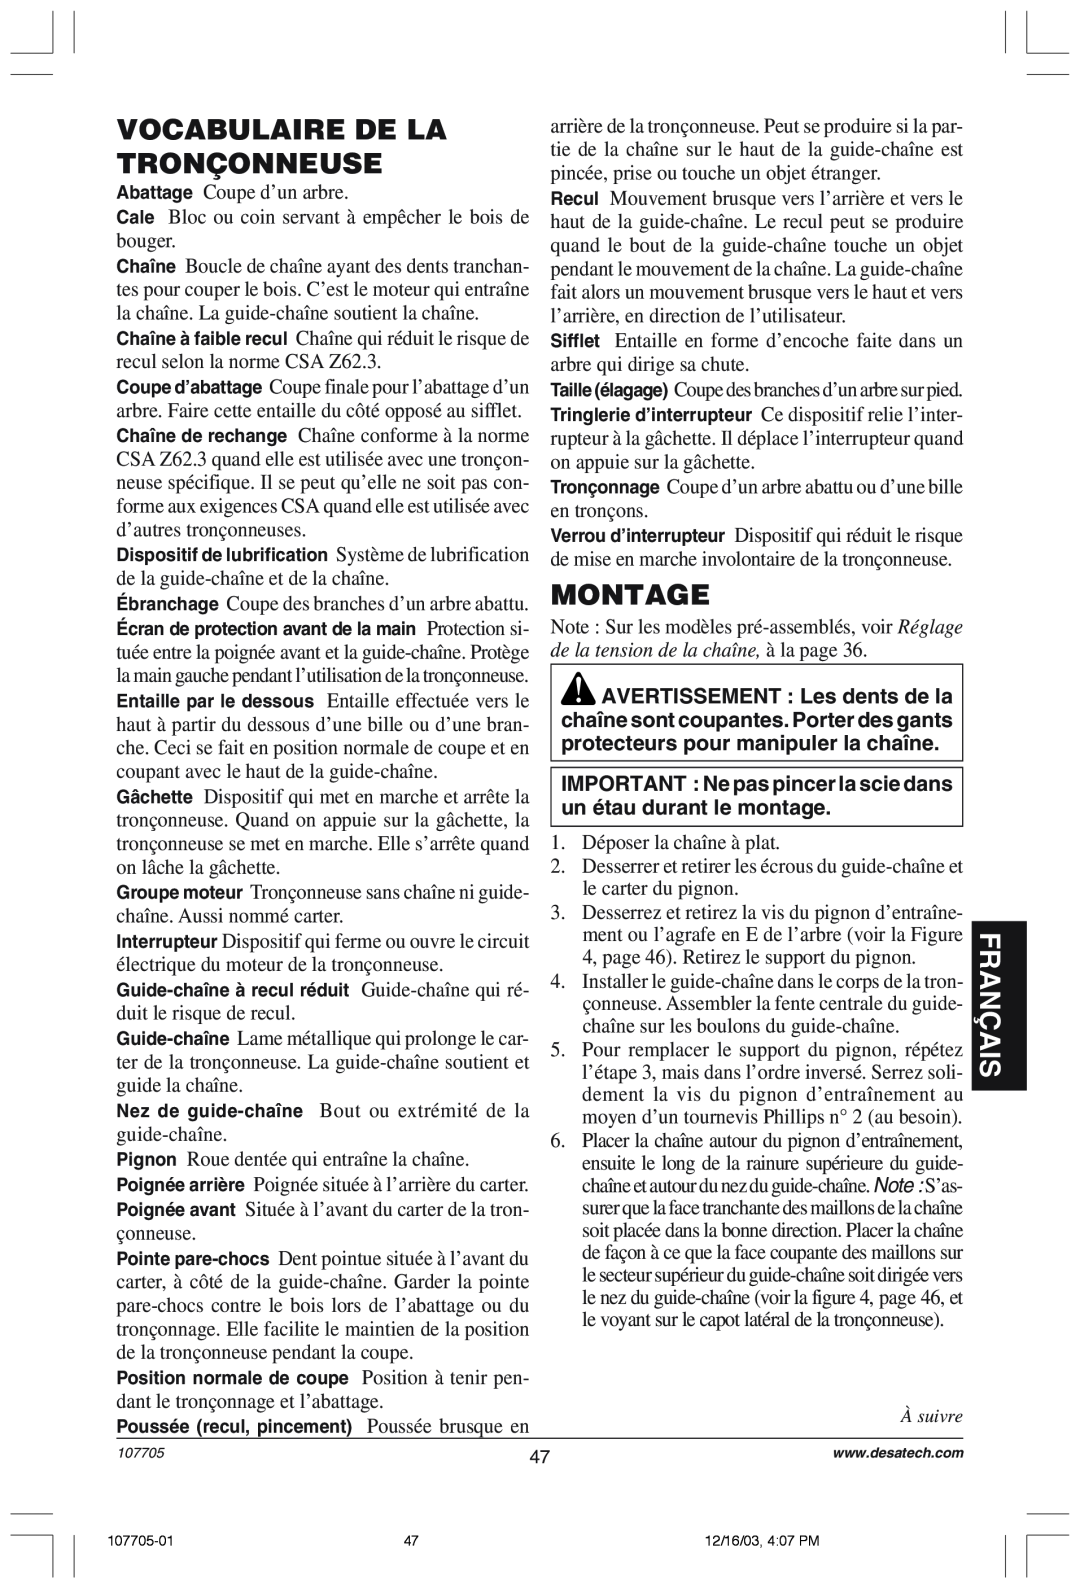 Desa 107624-01 owner manual Vocabulaire De La, Tronçonneuse, Montage, Fran‚Ais, de la tension de la chaîne, ˆ la page 